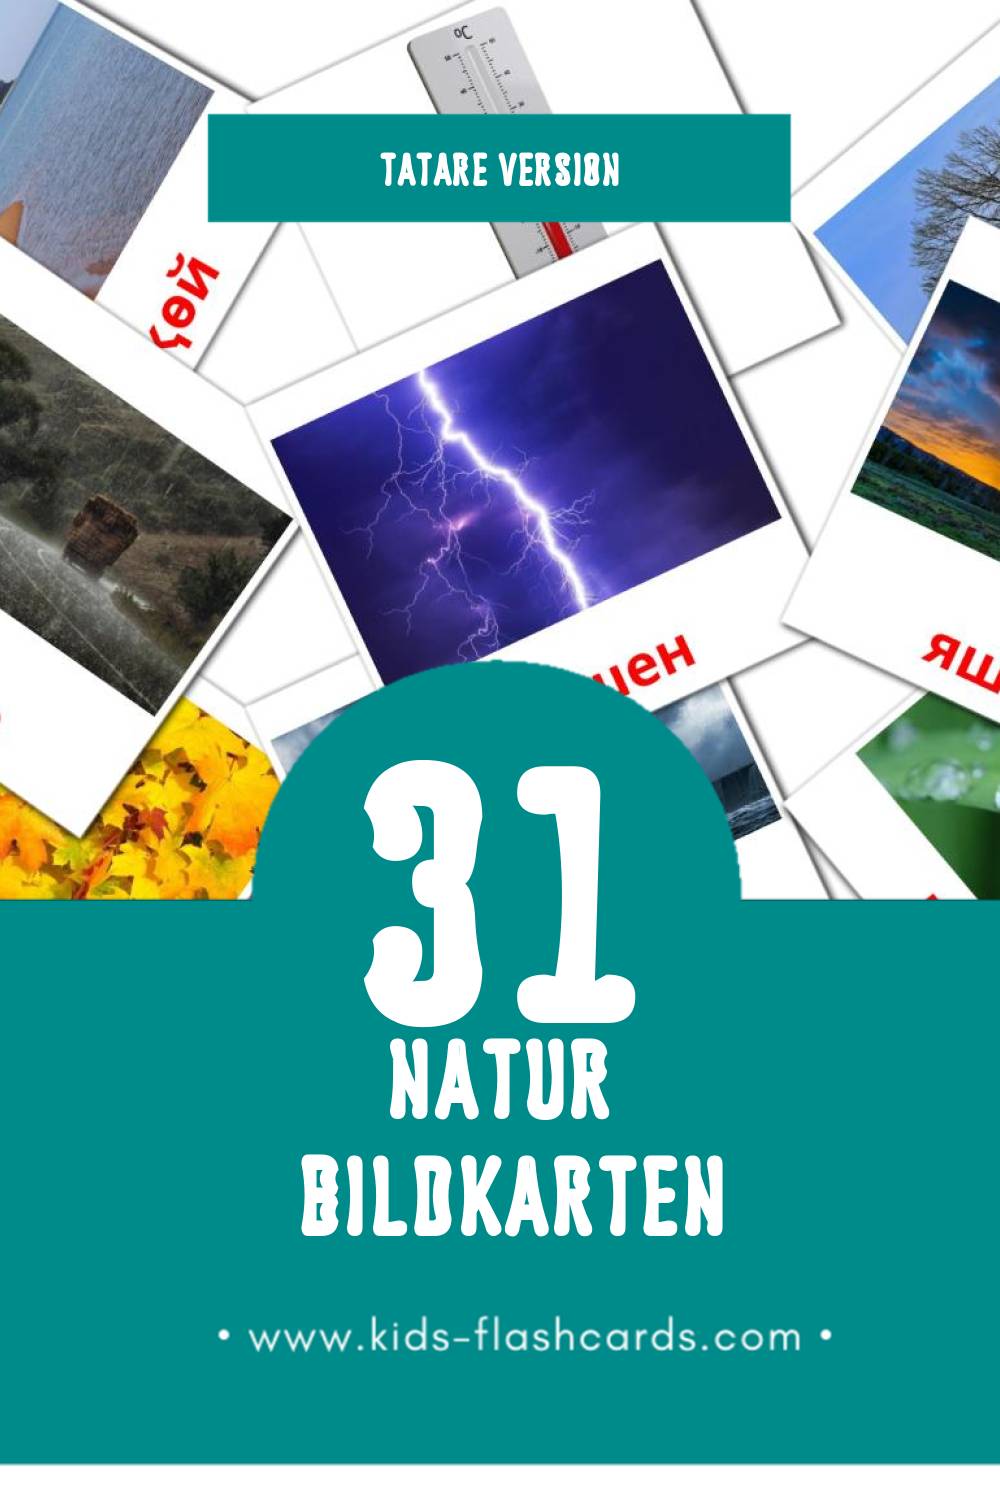 Visual Табигать Flashcards für Kleinkinder (31 Karten in Tatar)